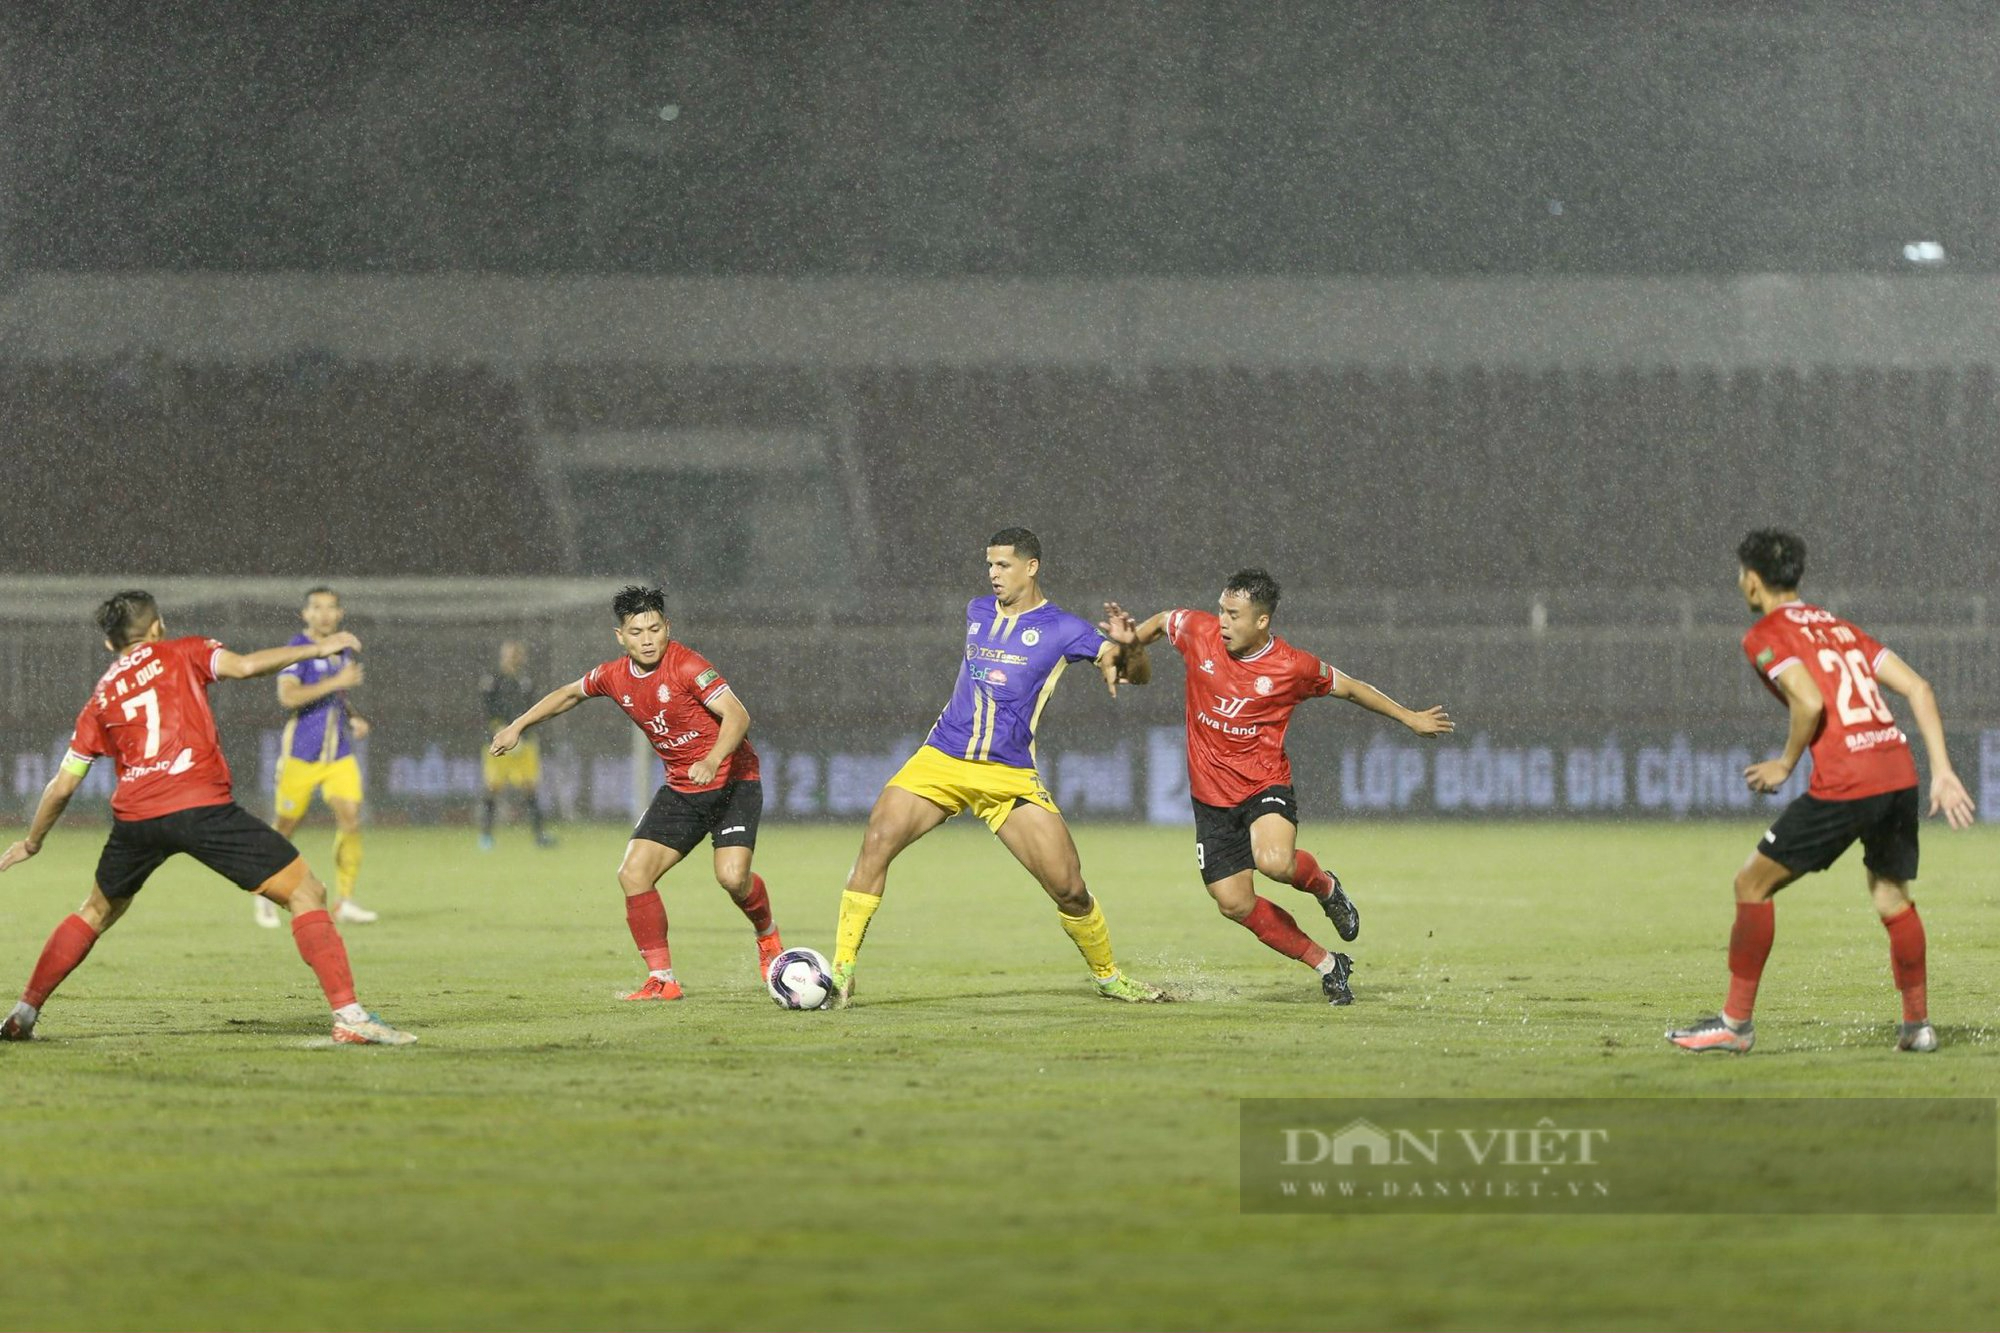 Tạo mưa bàn thắng trong trận thuỷ chiến, Hà Nội FC chạm tay vào chức vô địch - Ảnh 1.